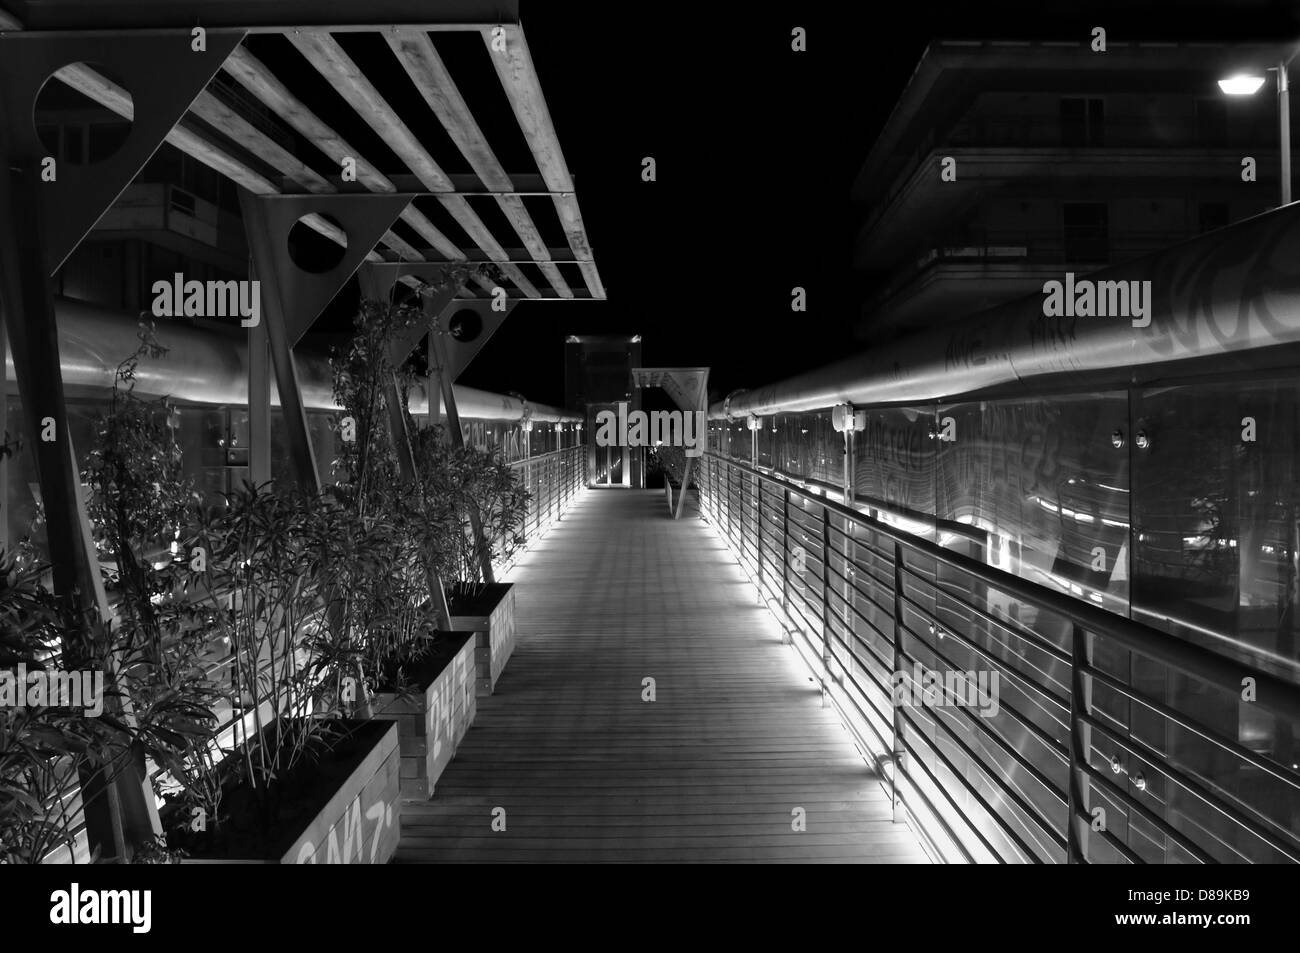 Passerelle pour piétons pont métallique au-dessus de l'autoroute la nuit. Noir et blanc. Banque D'Images